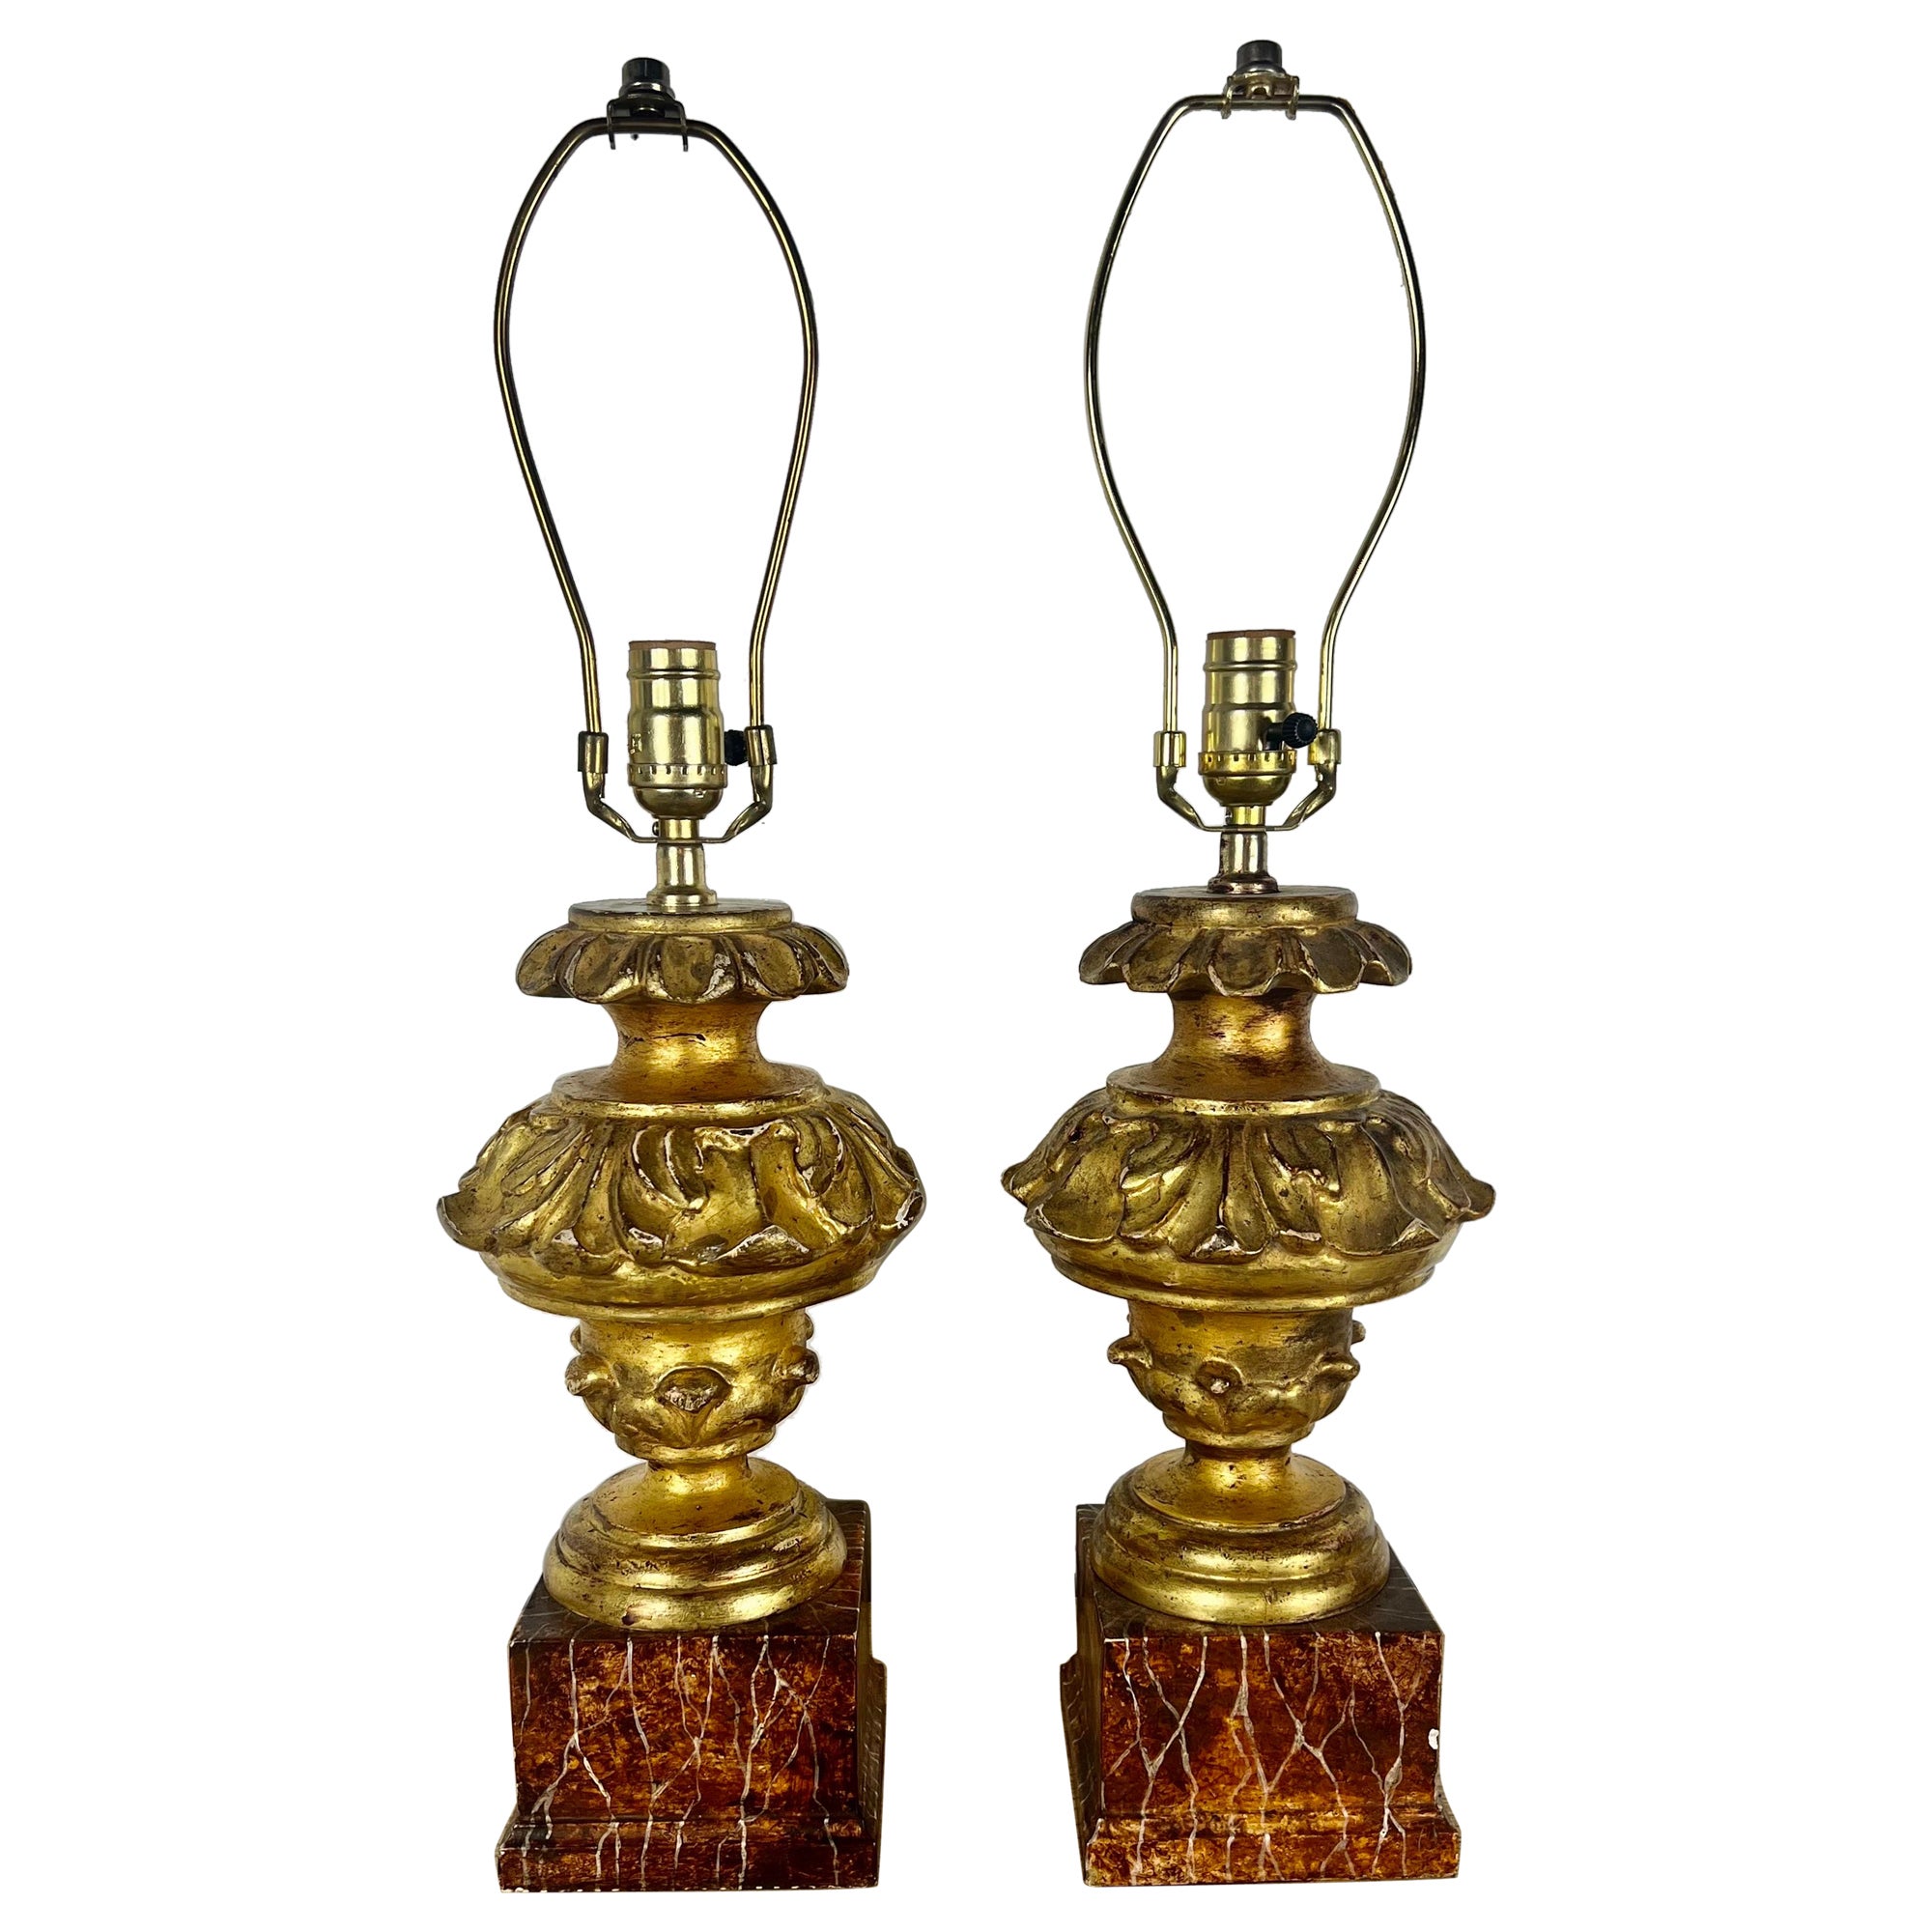 Paire de lampes italiennes en bois doré sculpté sur socle en faux marbre